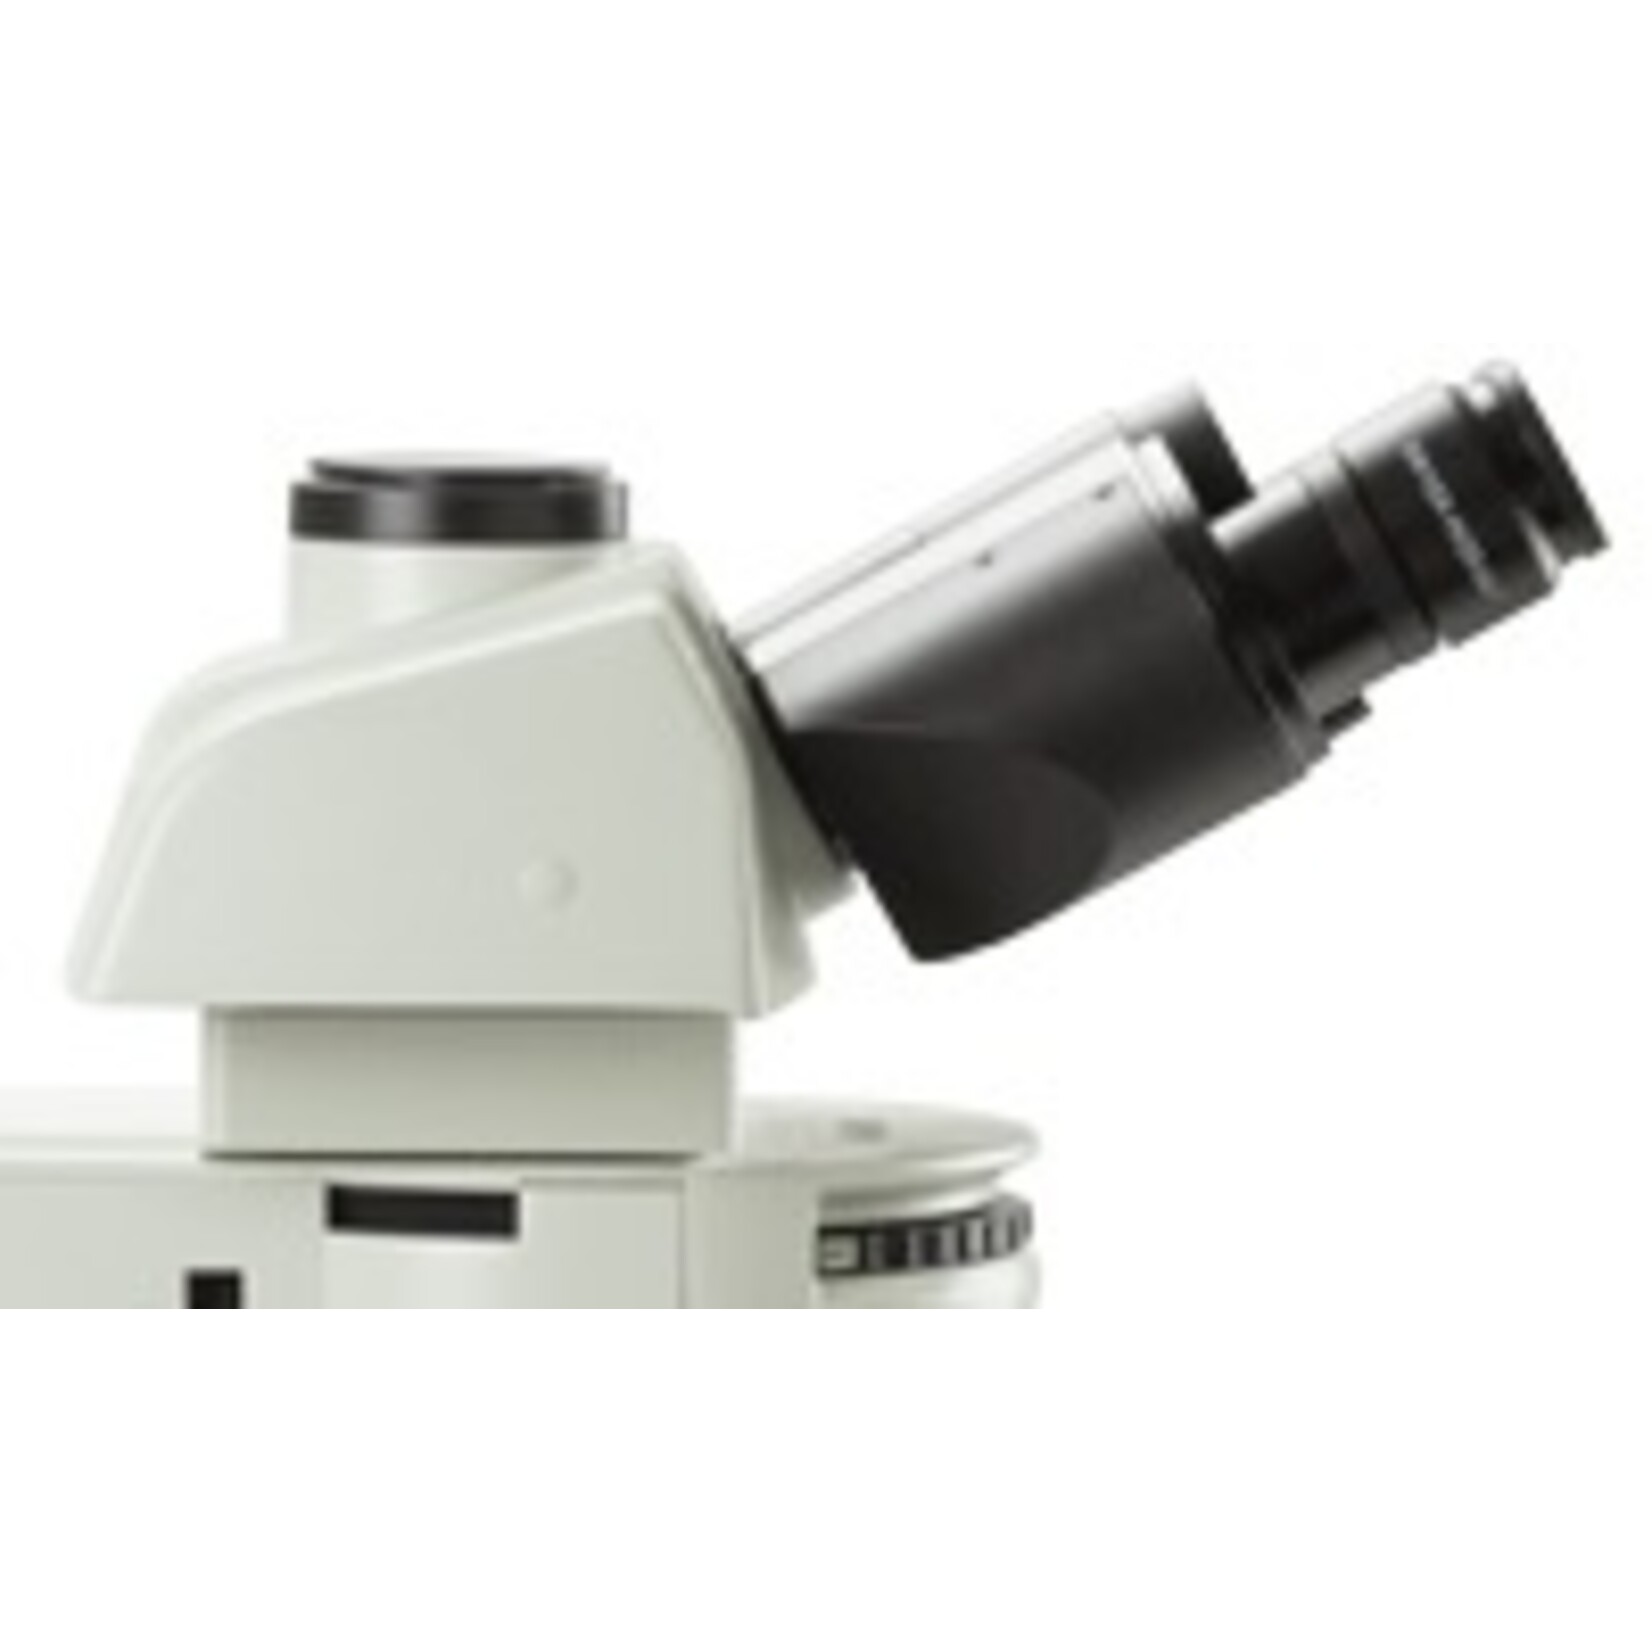 Microscopio Delphi per prove sui materiali metallurgici